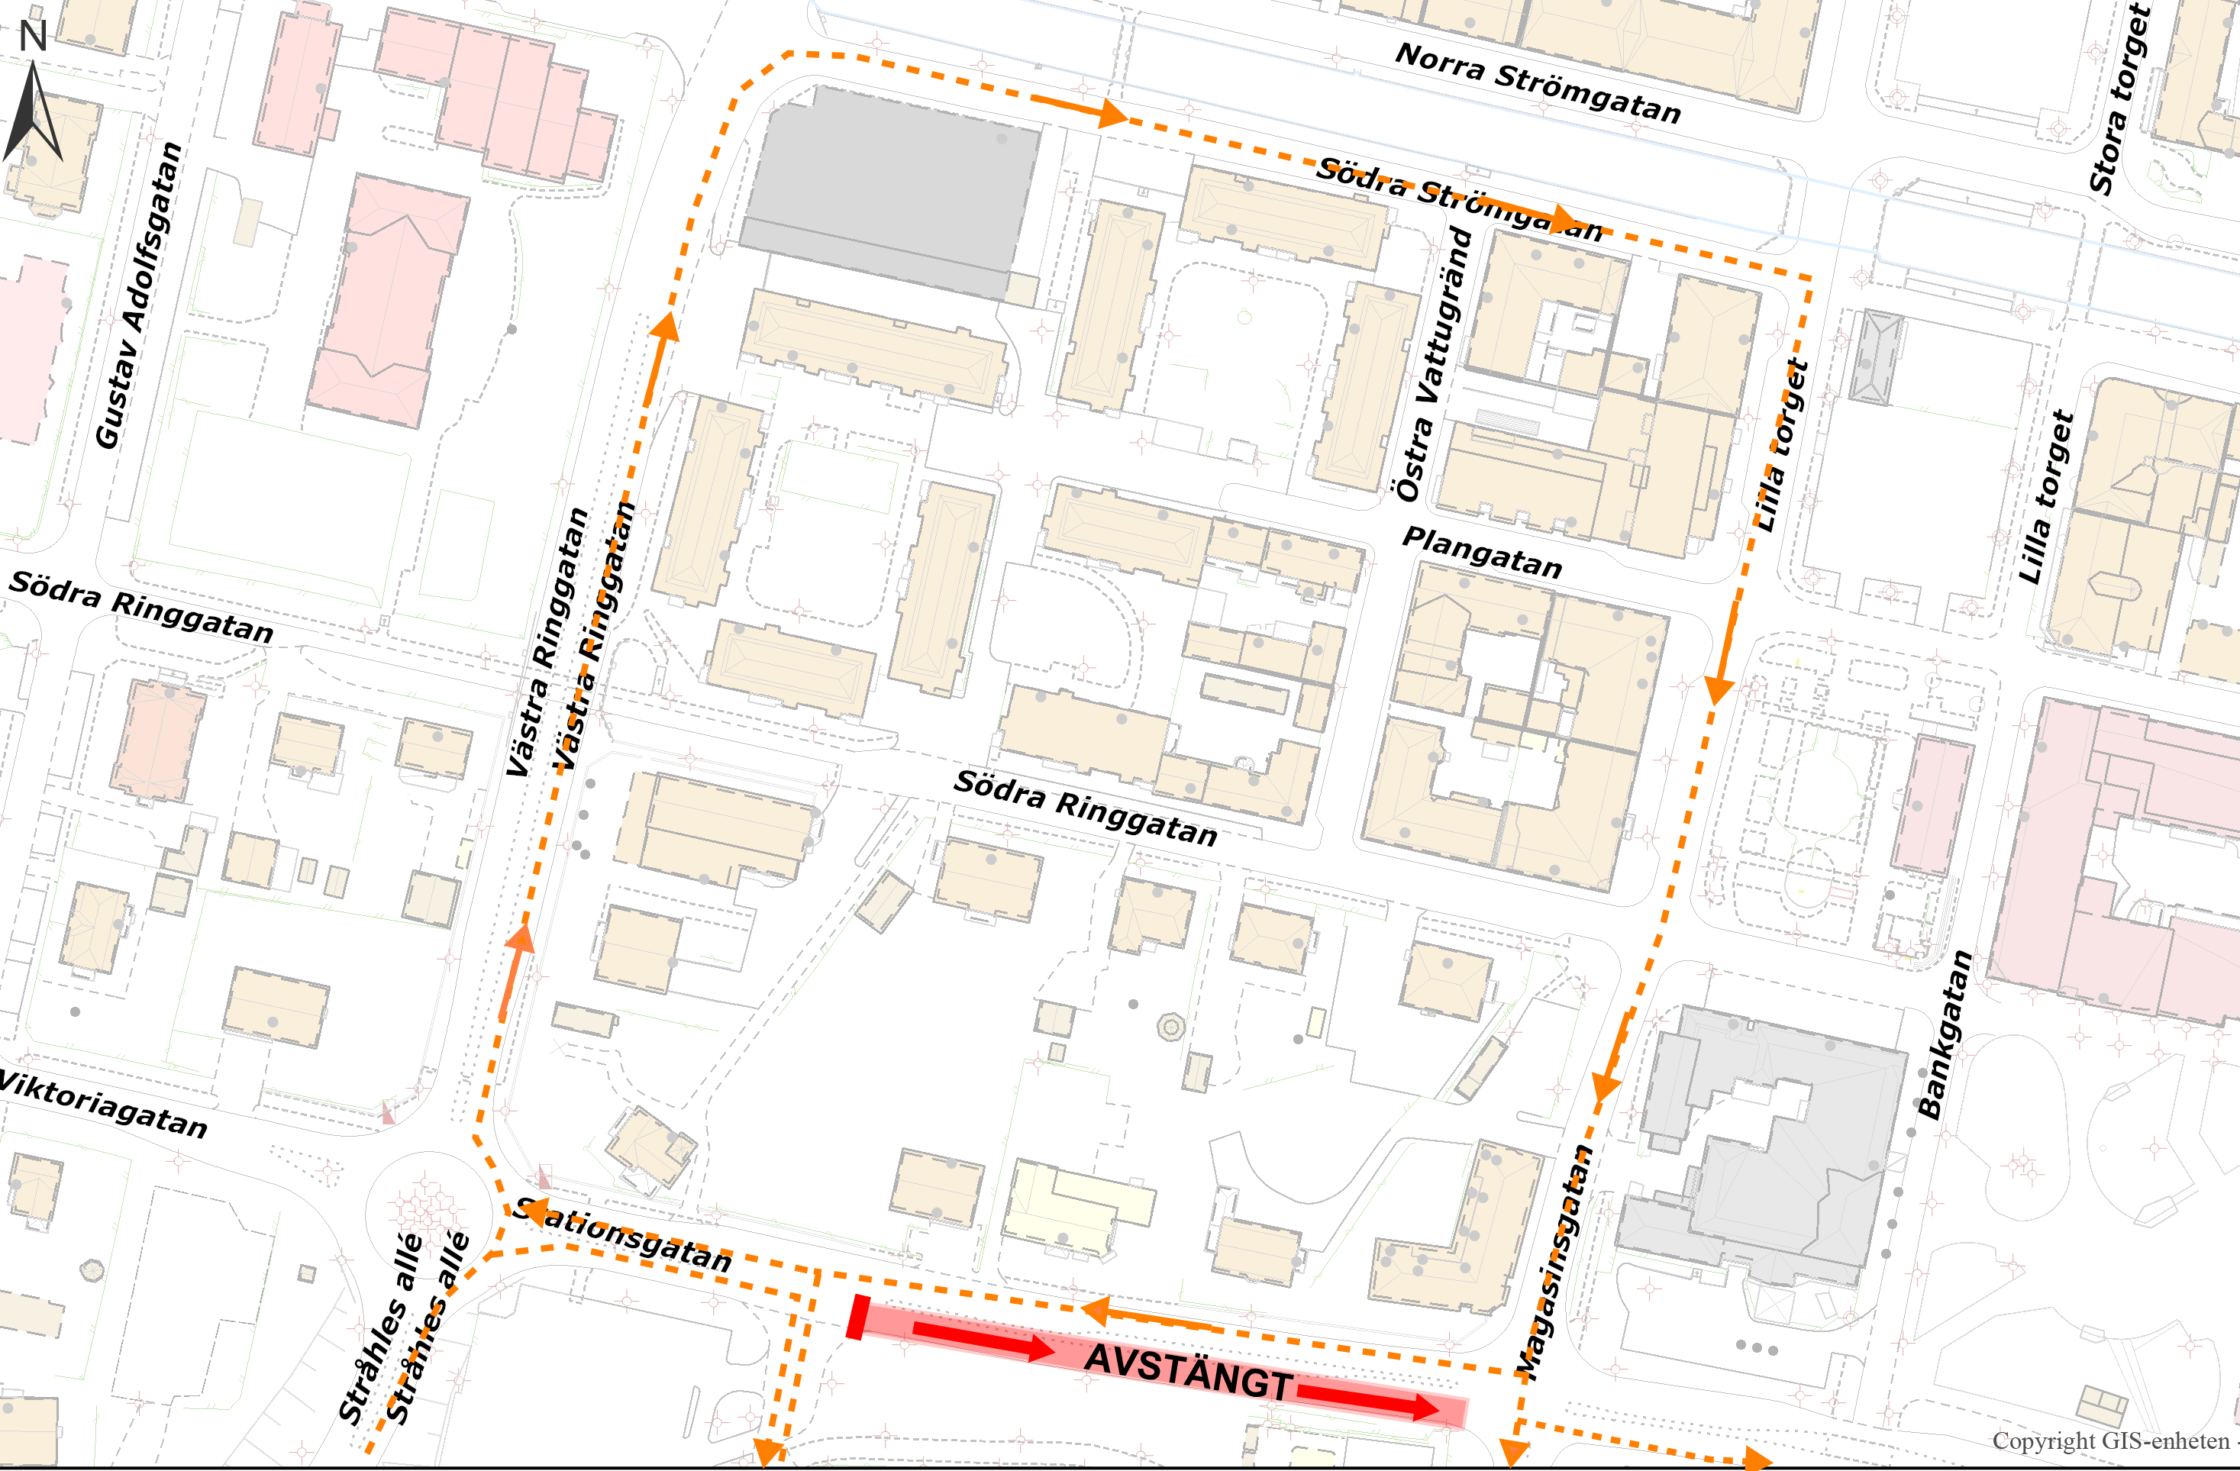 Karta med den avstängda delen av Stationnsgatan markerad.